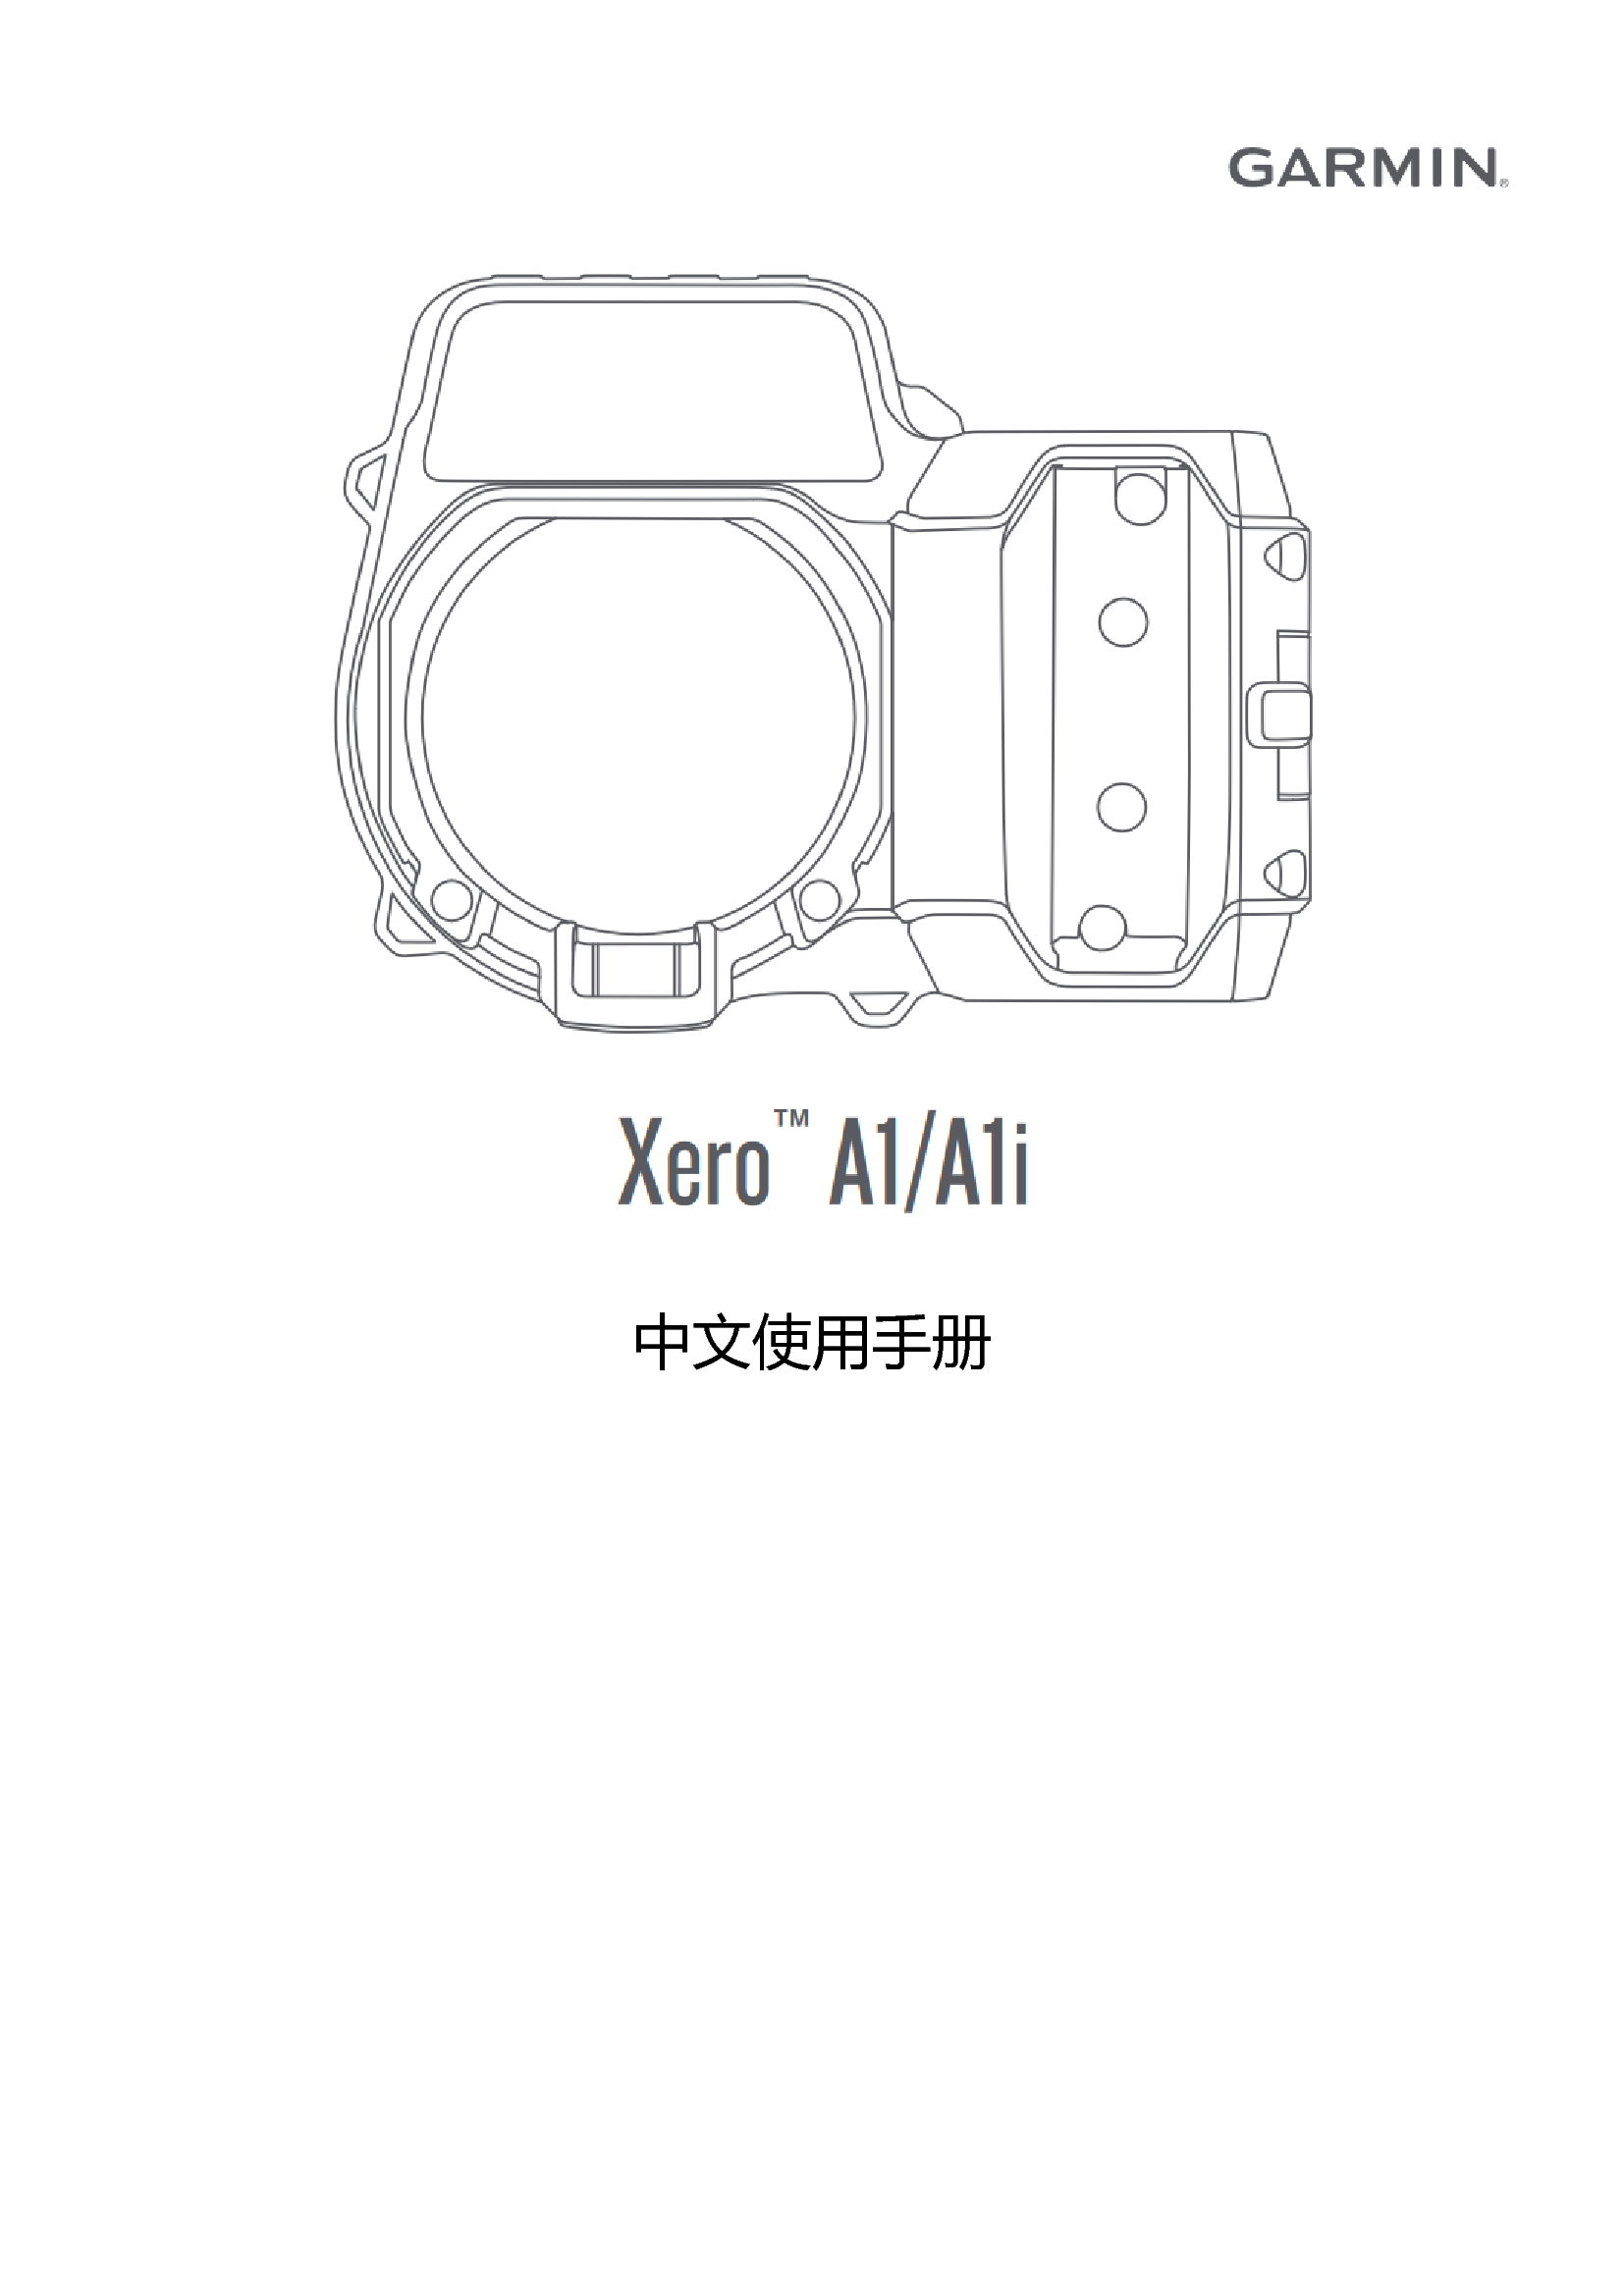 佳明 Garmin XERO A1 使用说明书 封面